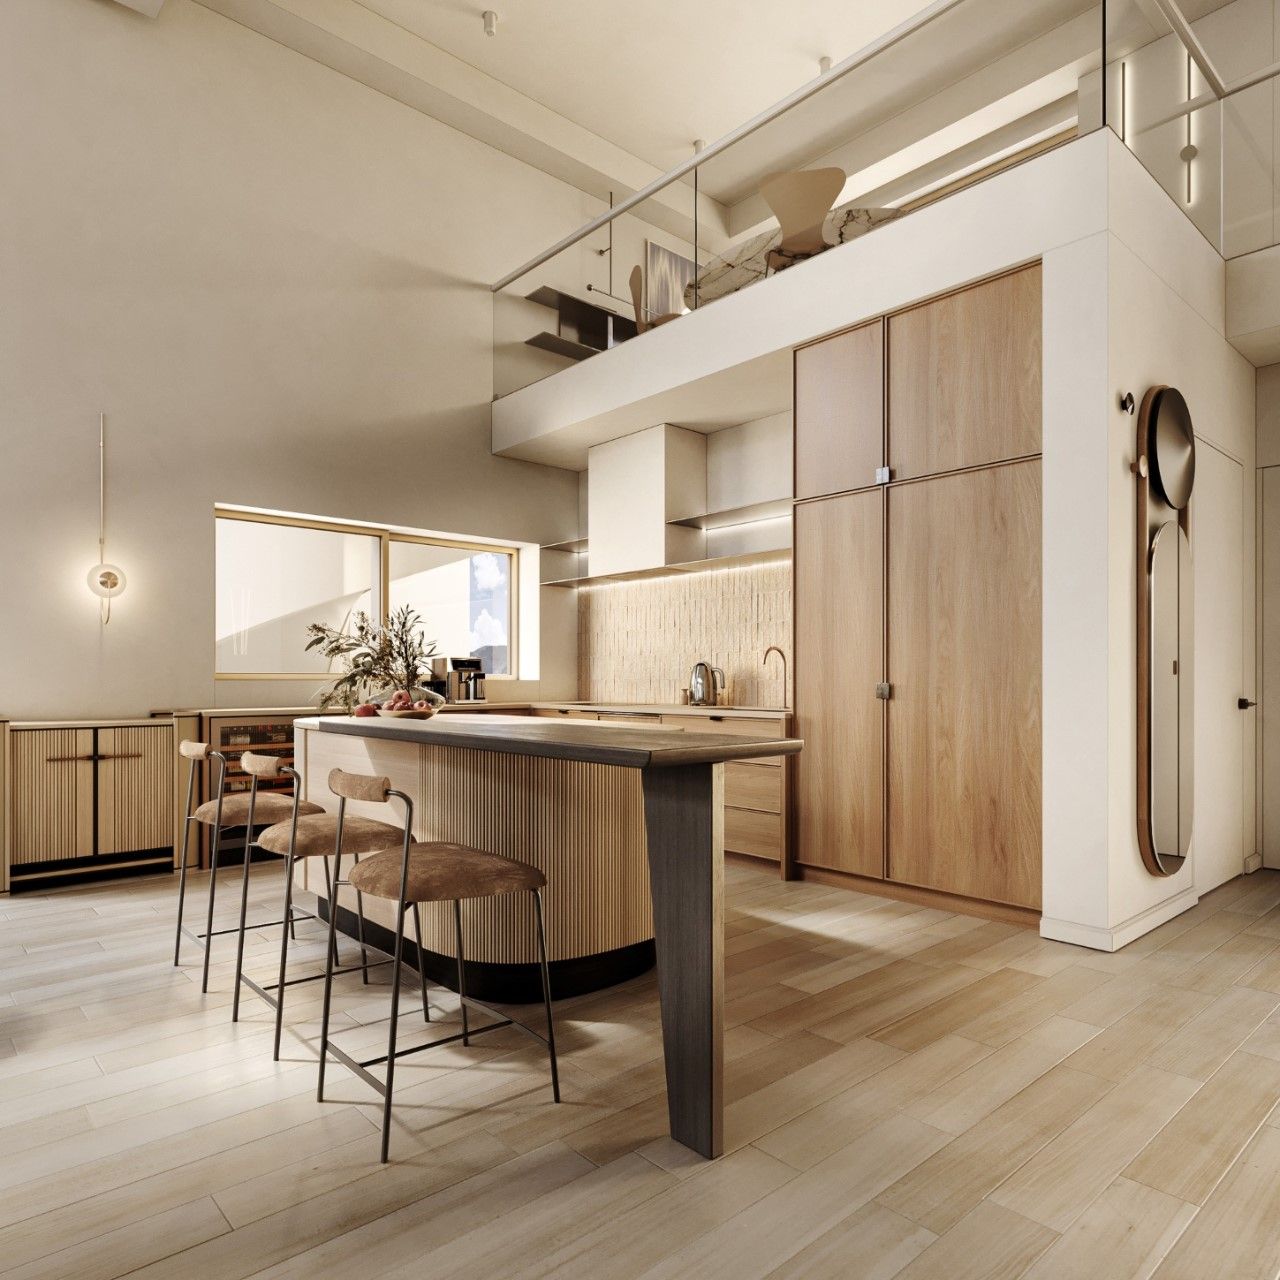 Không gian bếp hiện đại với bàn dảo kết hợp quầy bar sử dụng ghế nhung cao cấp; tủ bếp chú L tông màu gỗ sáng